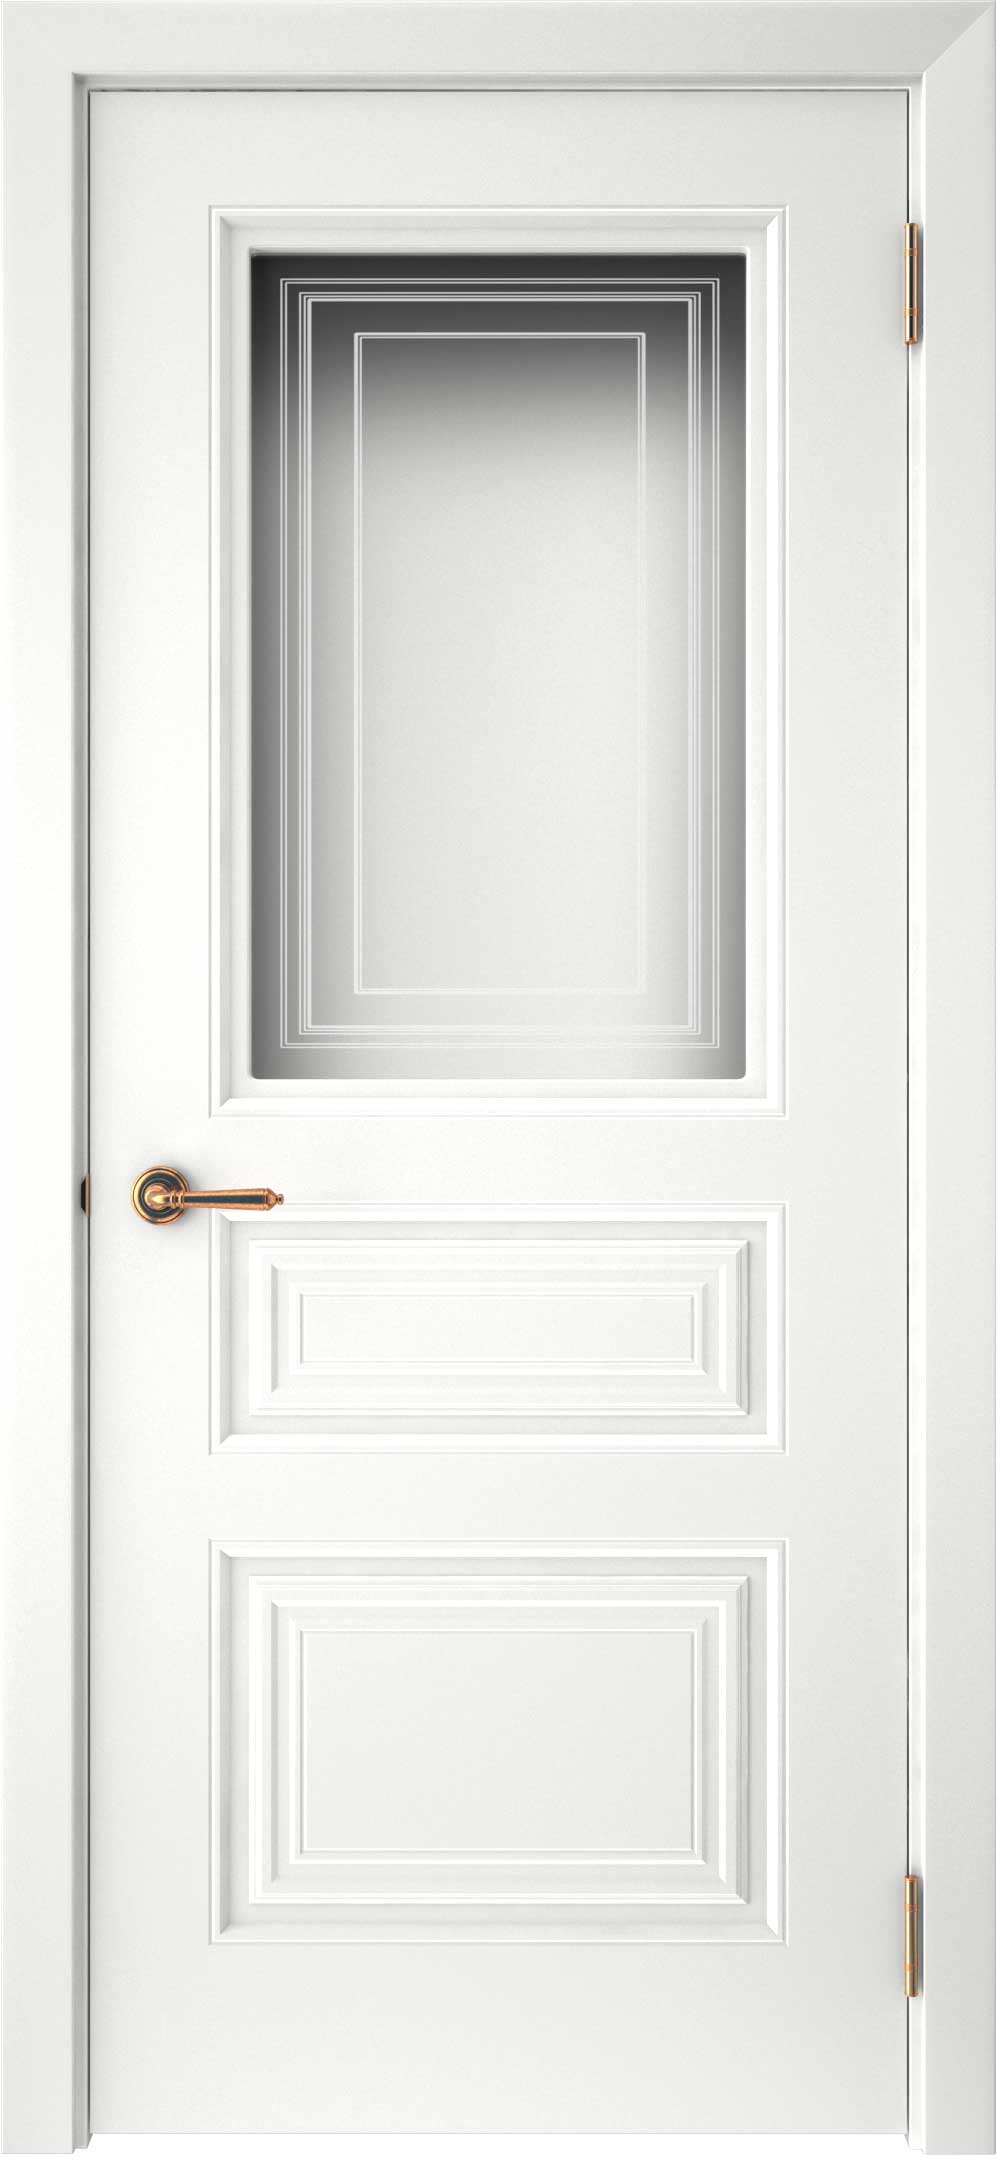 Двери крашеные (Эмаль) ТЕКОНА Смальта-44 со стеклом Белый ral размер 200 х 80 см. артикул F0000093305